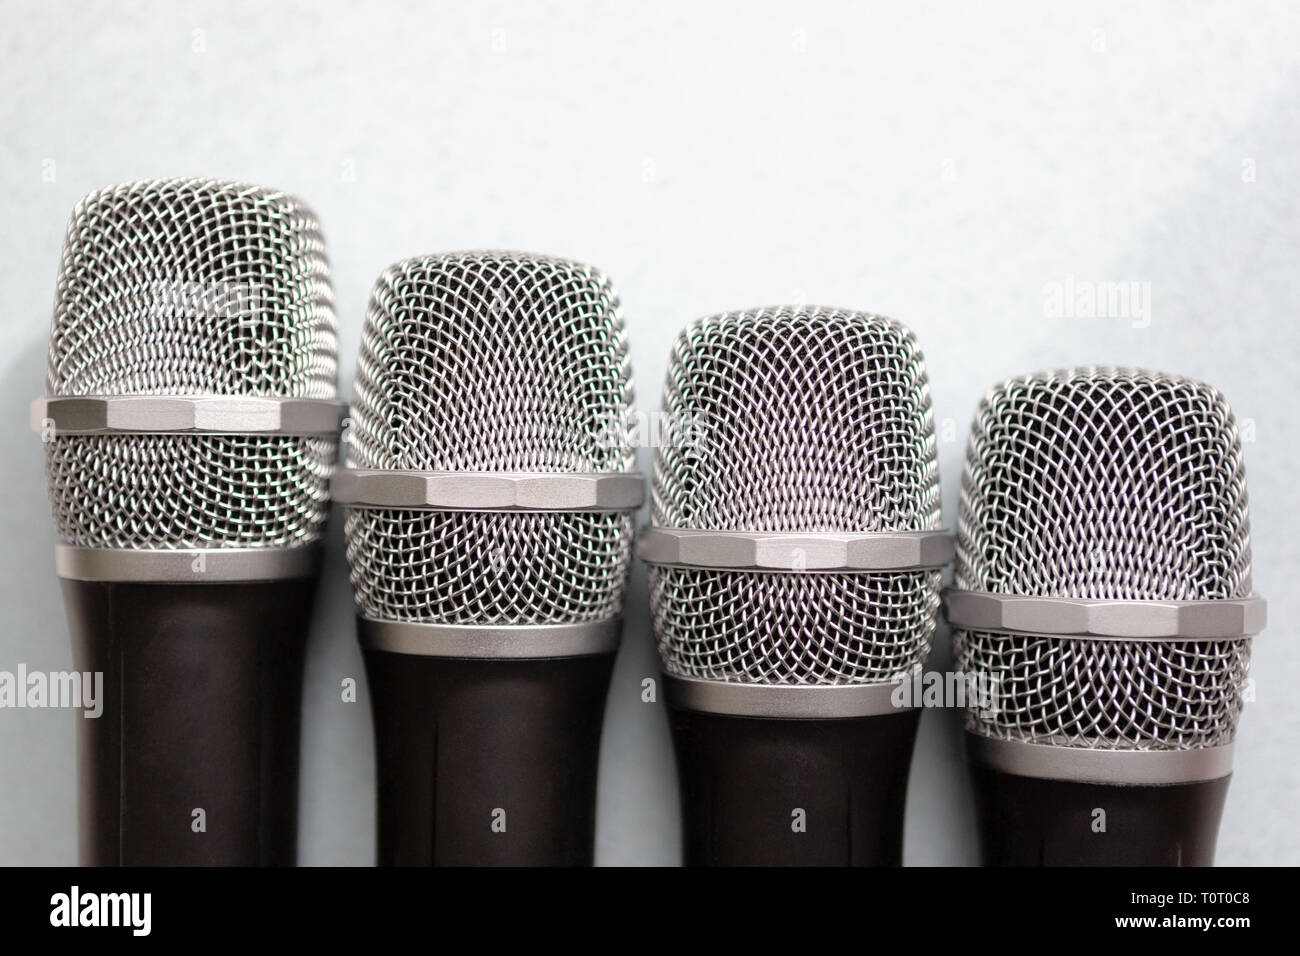 Il concetto di leadership. gruppo di microfoni con golden one. La libertà di parlare del concetto. Foto Stock